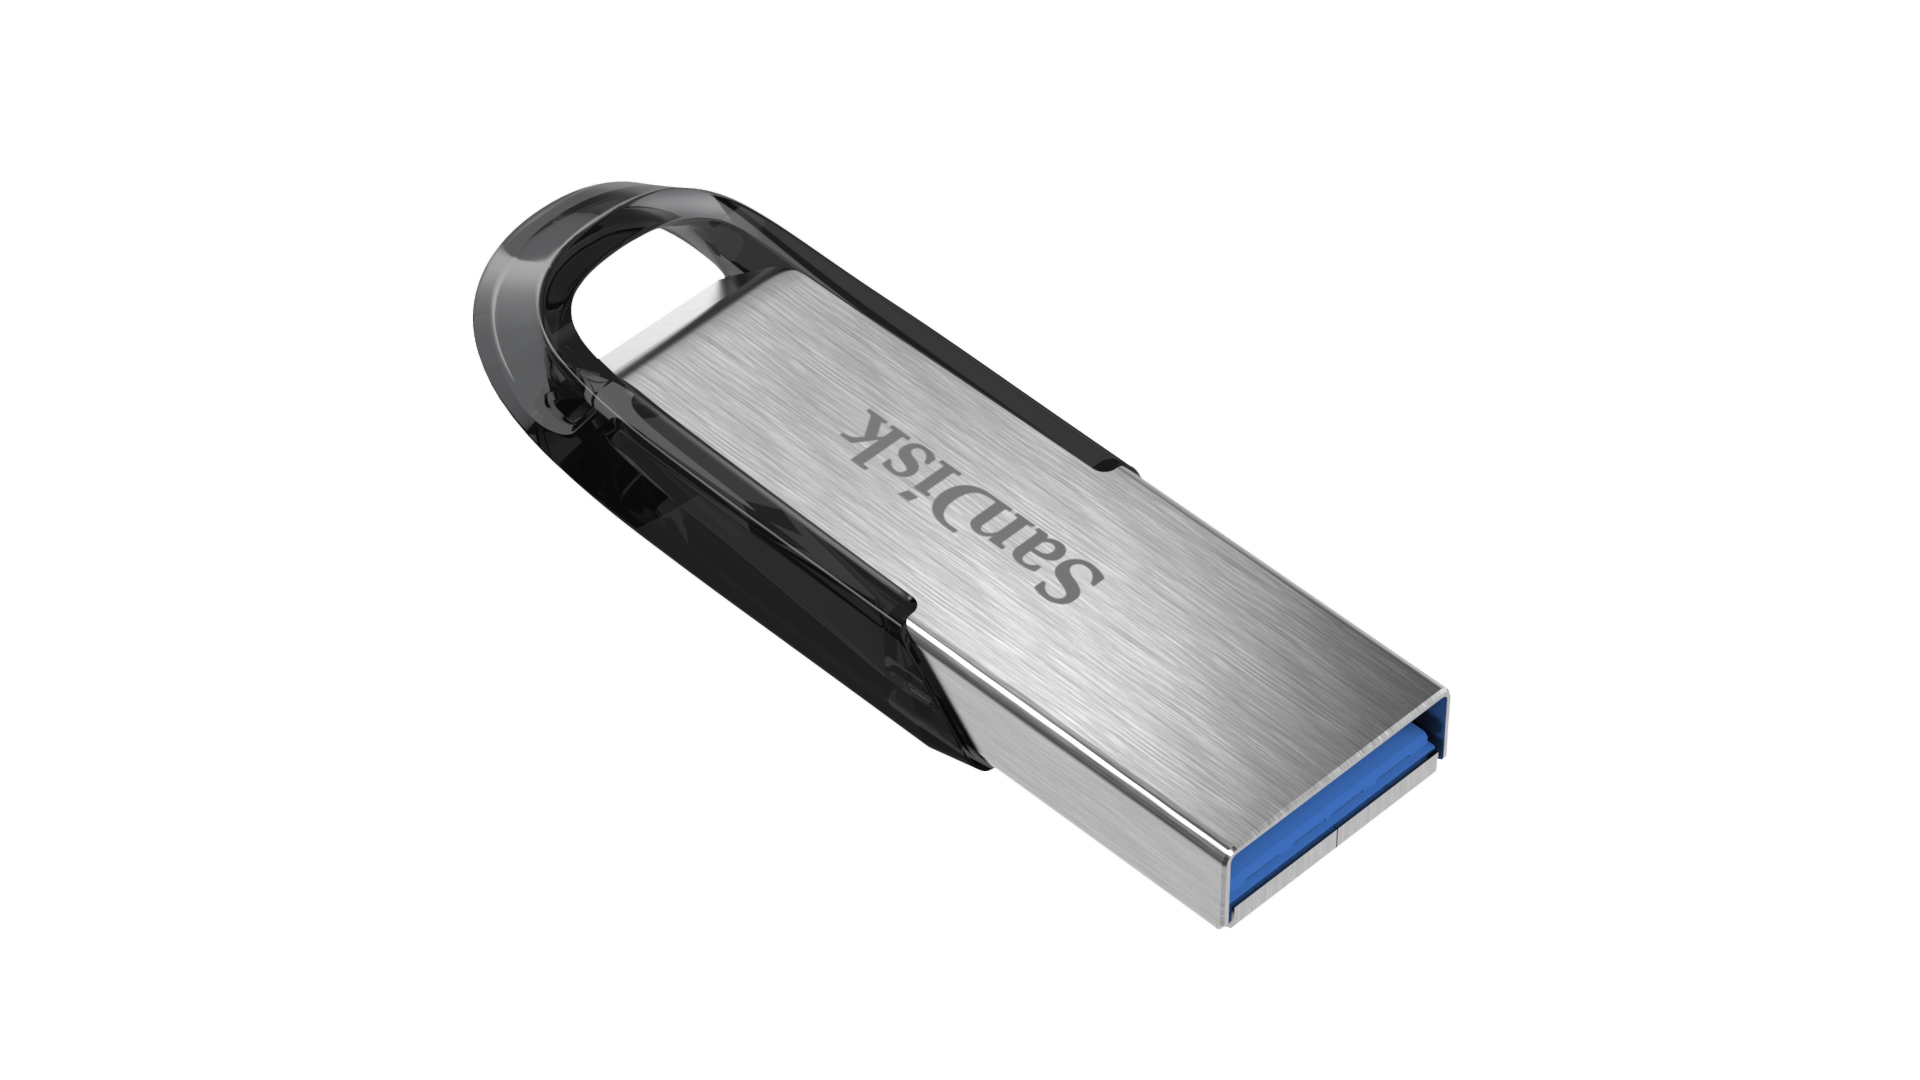 SANDISK HI-SPEED USB 3.0 16GB